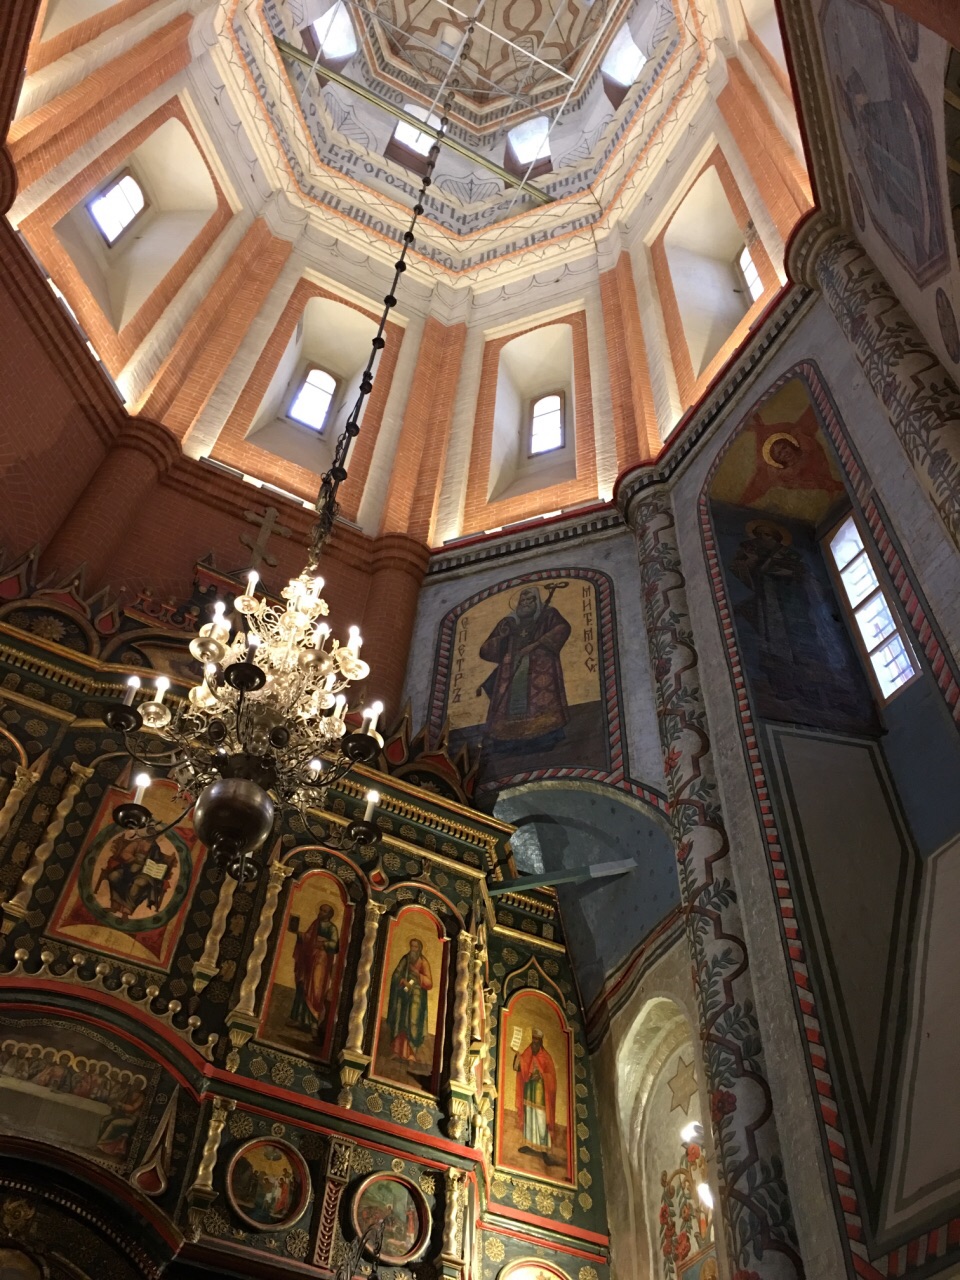 瓦西里升天教堂内部图片